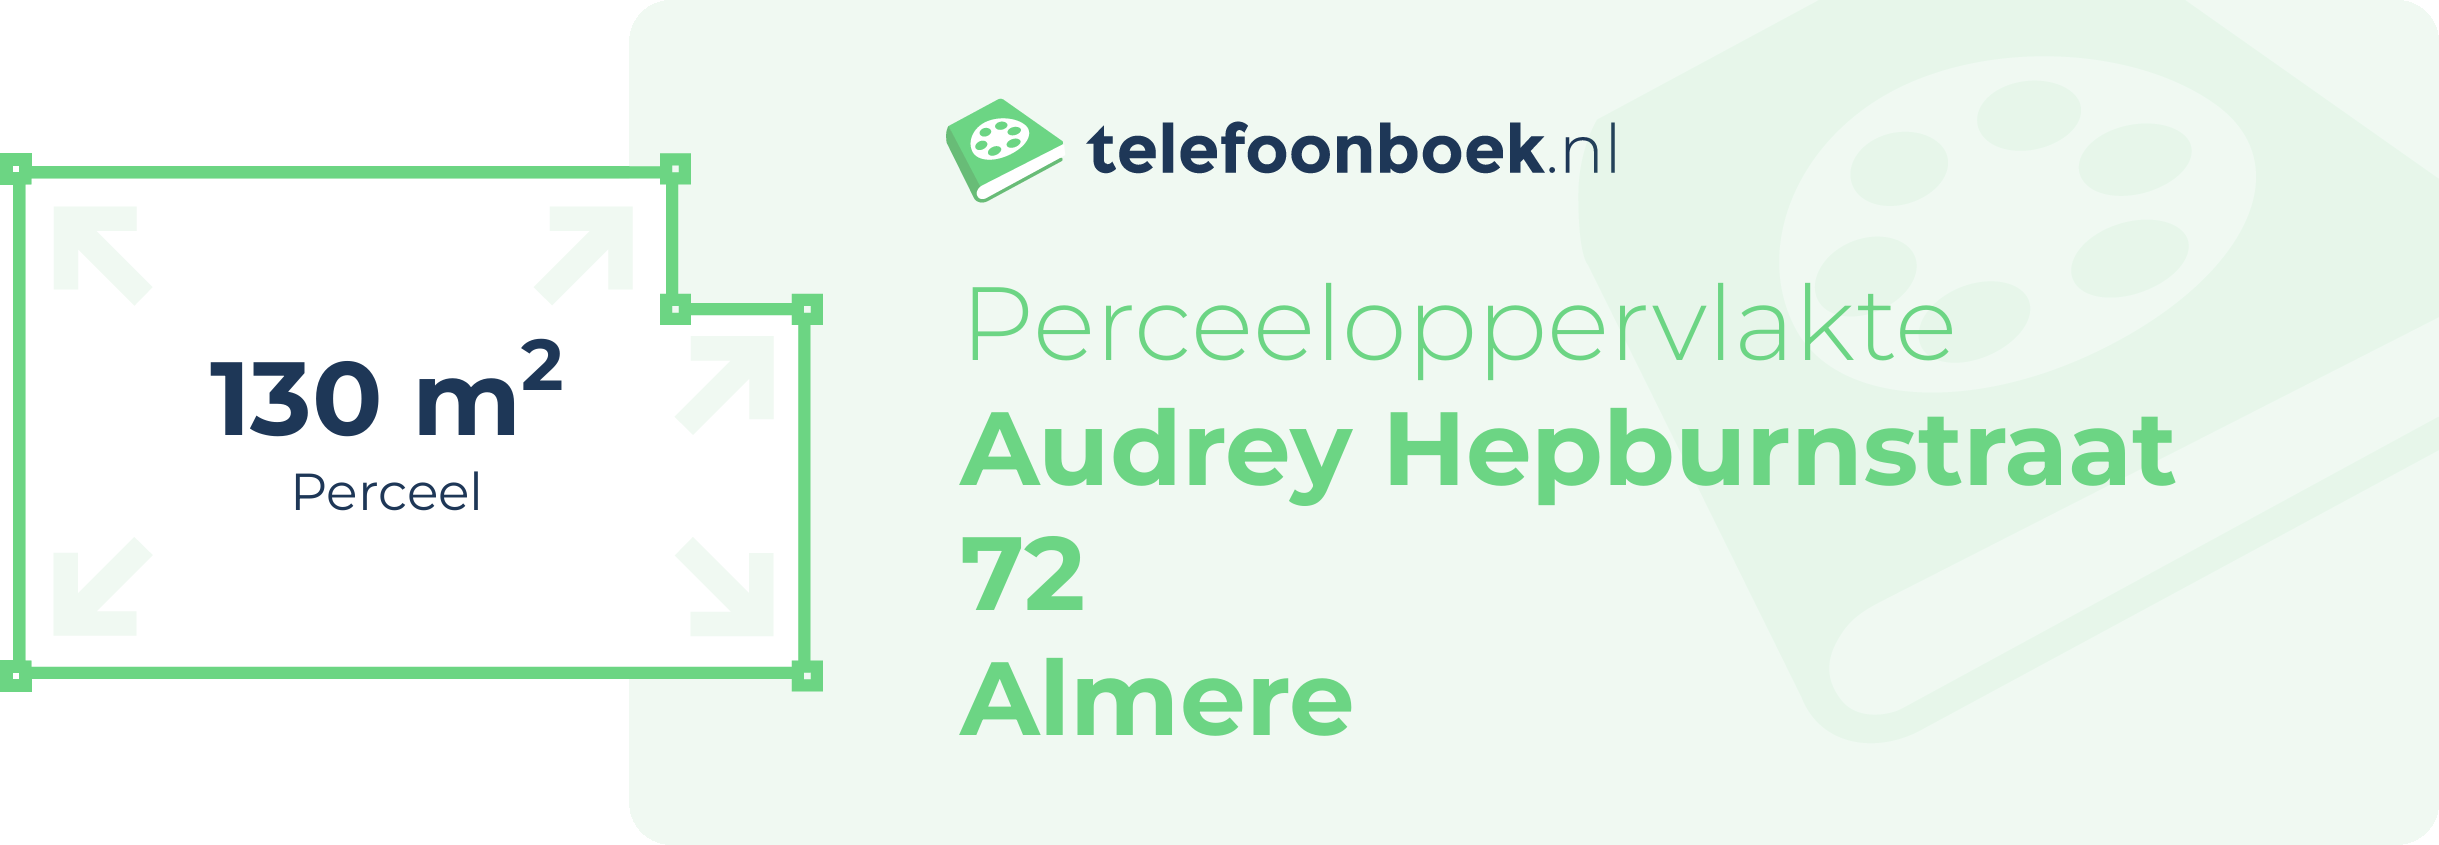 Perceeloppervlakte Audrey Hepburnstraat 72 Almere